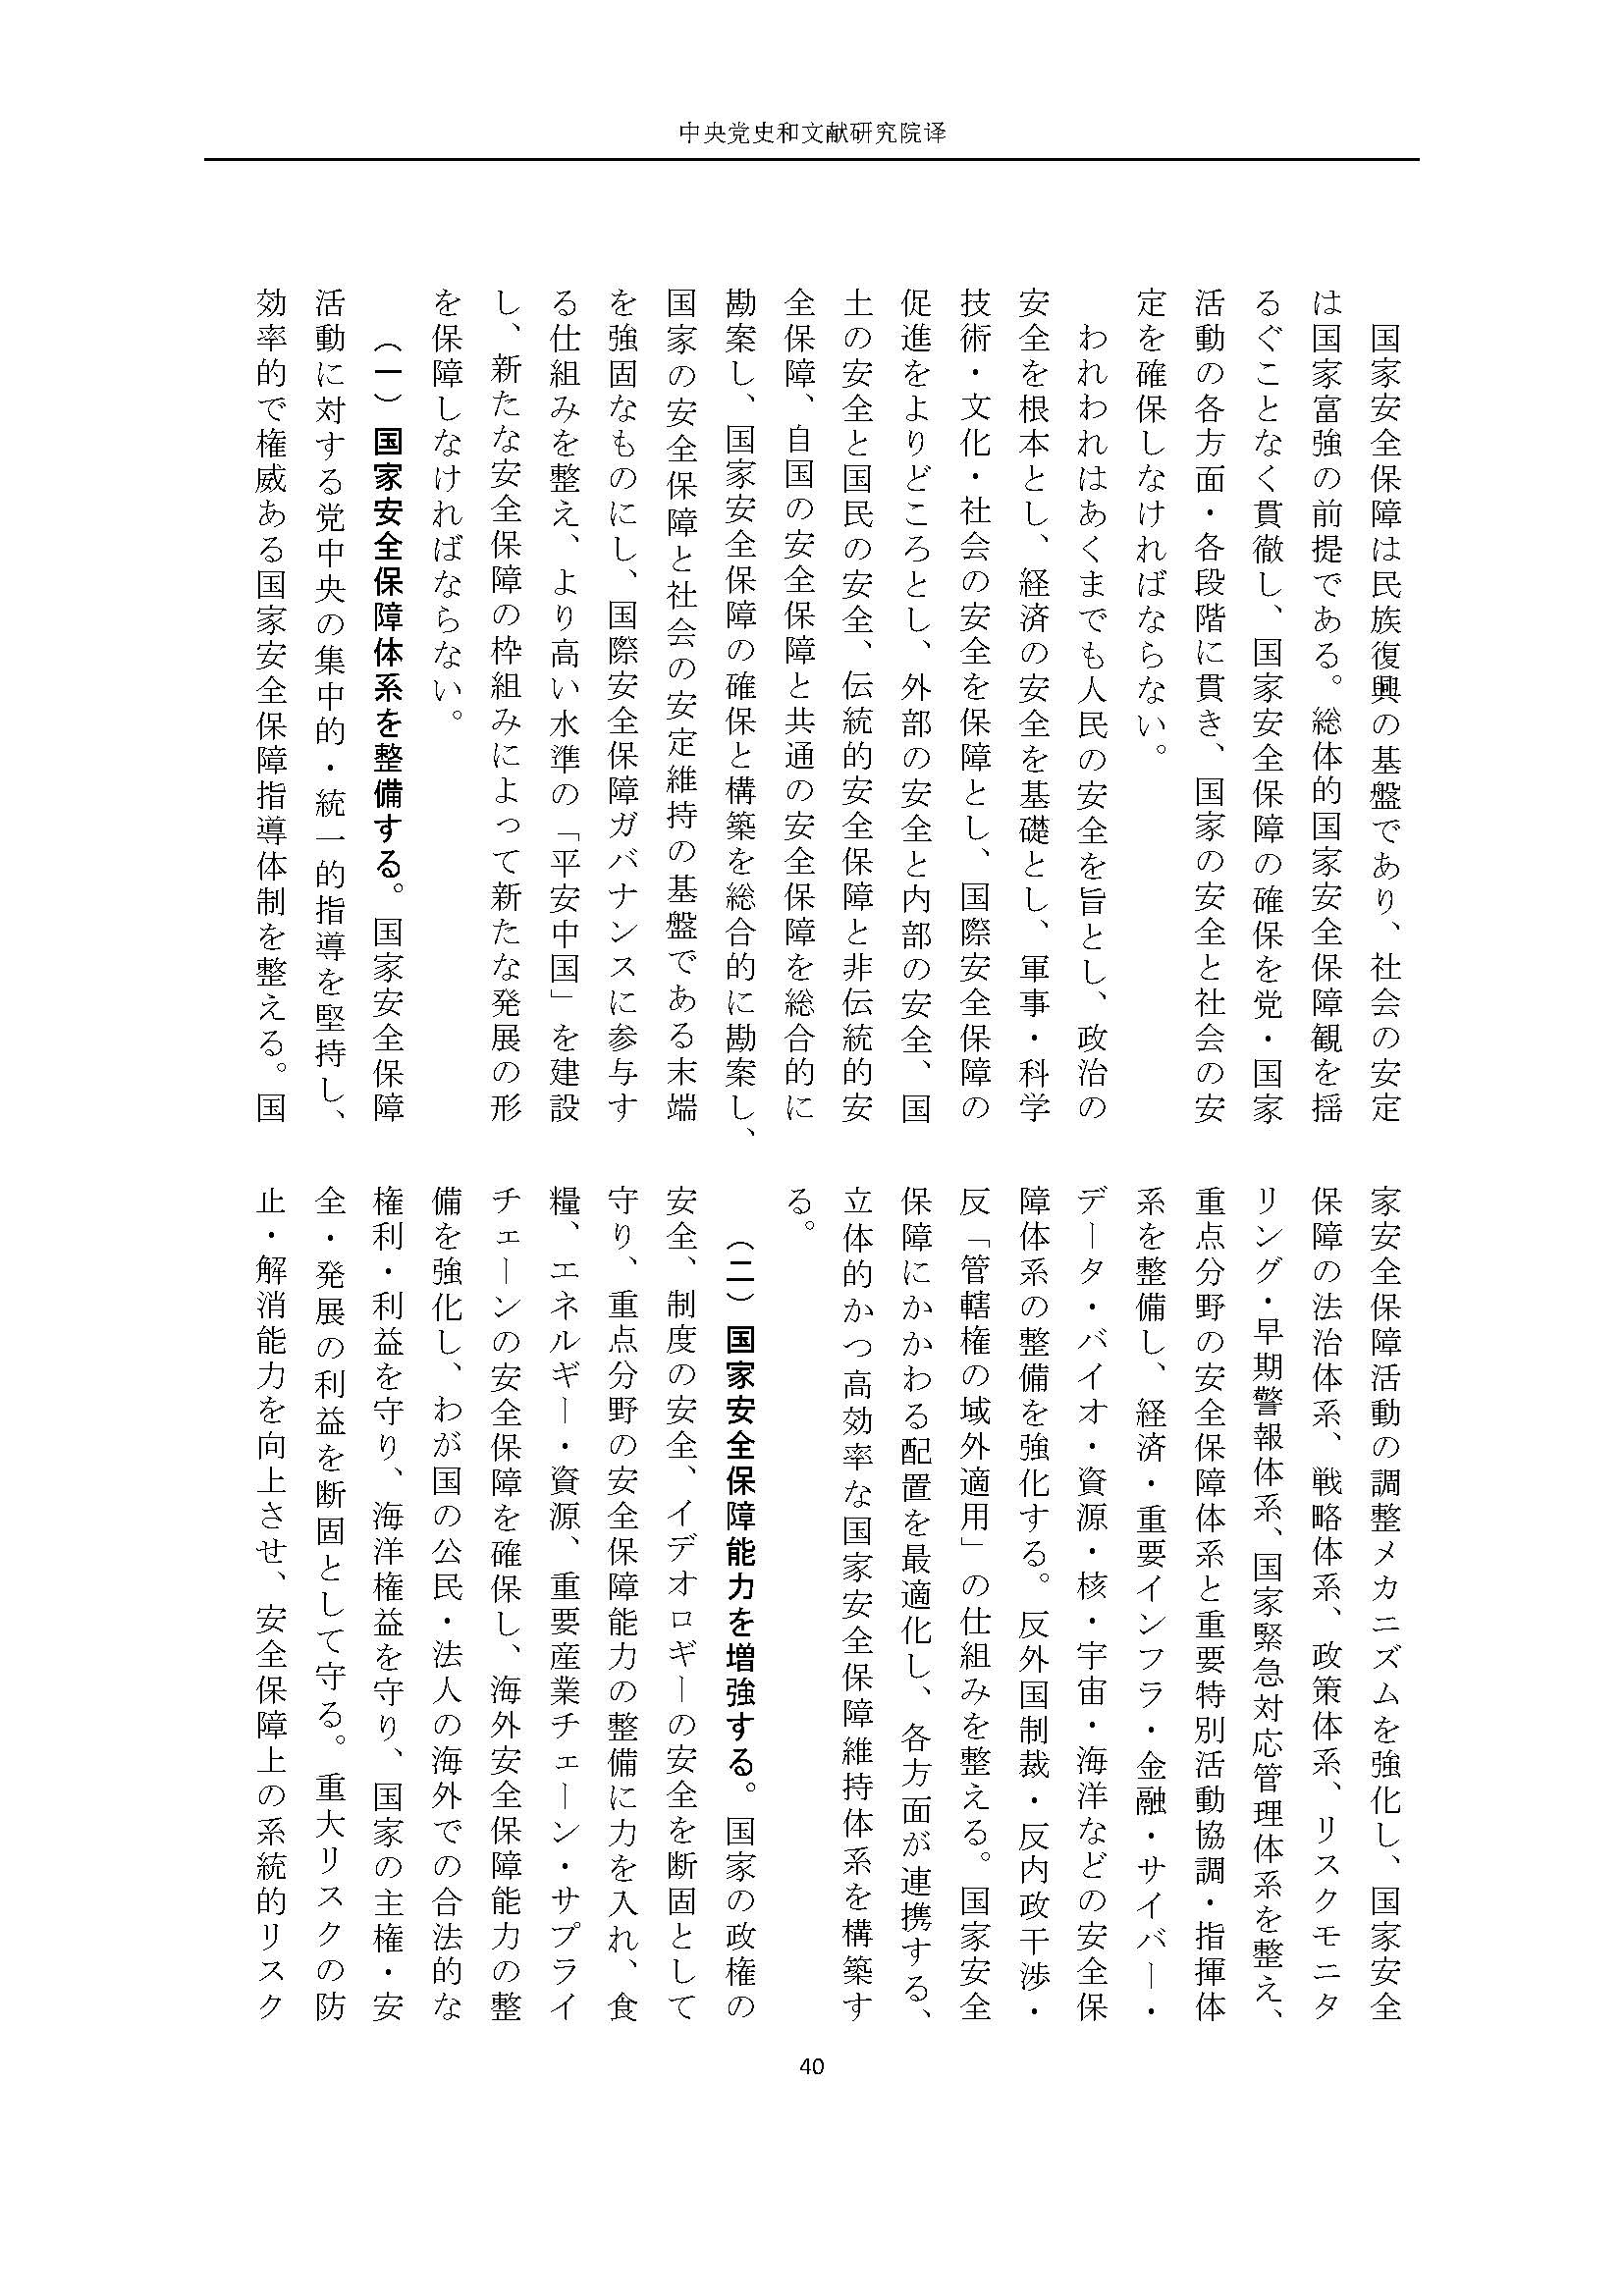 二十大报告（日文全文）_页面_41